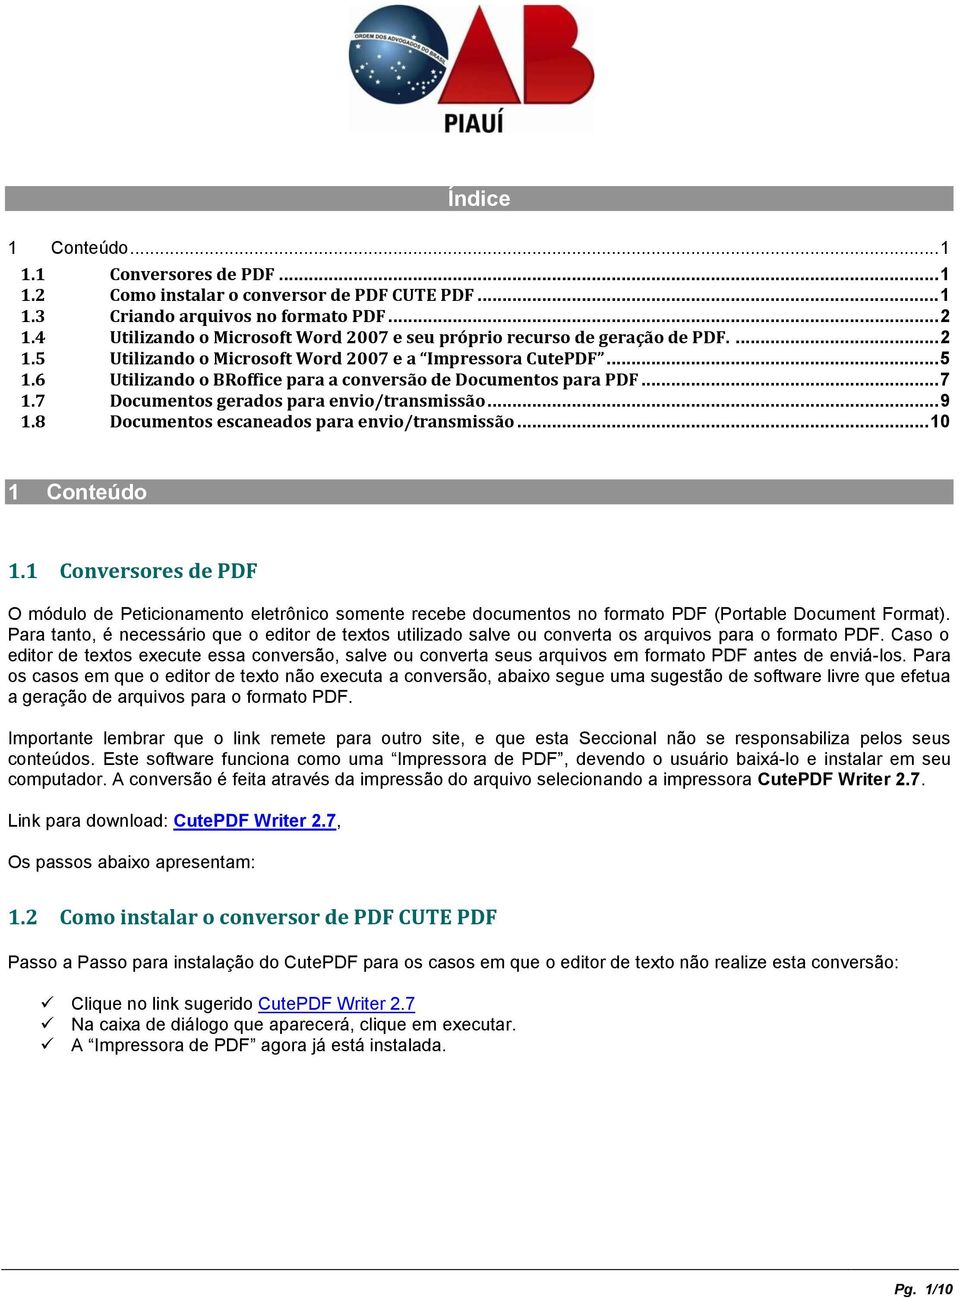 6 Utilizando o BRoffice para a conversão de Documentos para PDF... 7 1.7 Documentos gerados para envio/transmissão... 9 1.8 Documentos escaneados para envio/transmissão... 10 1 Conteúdo 1.